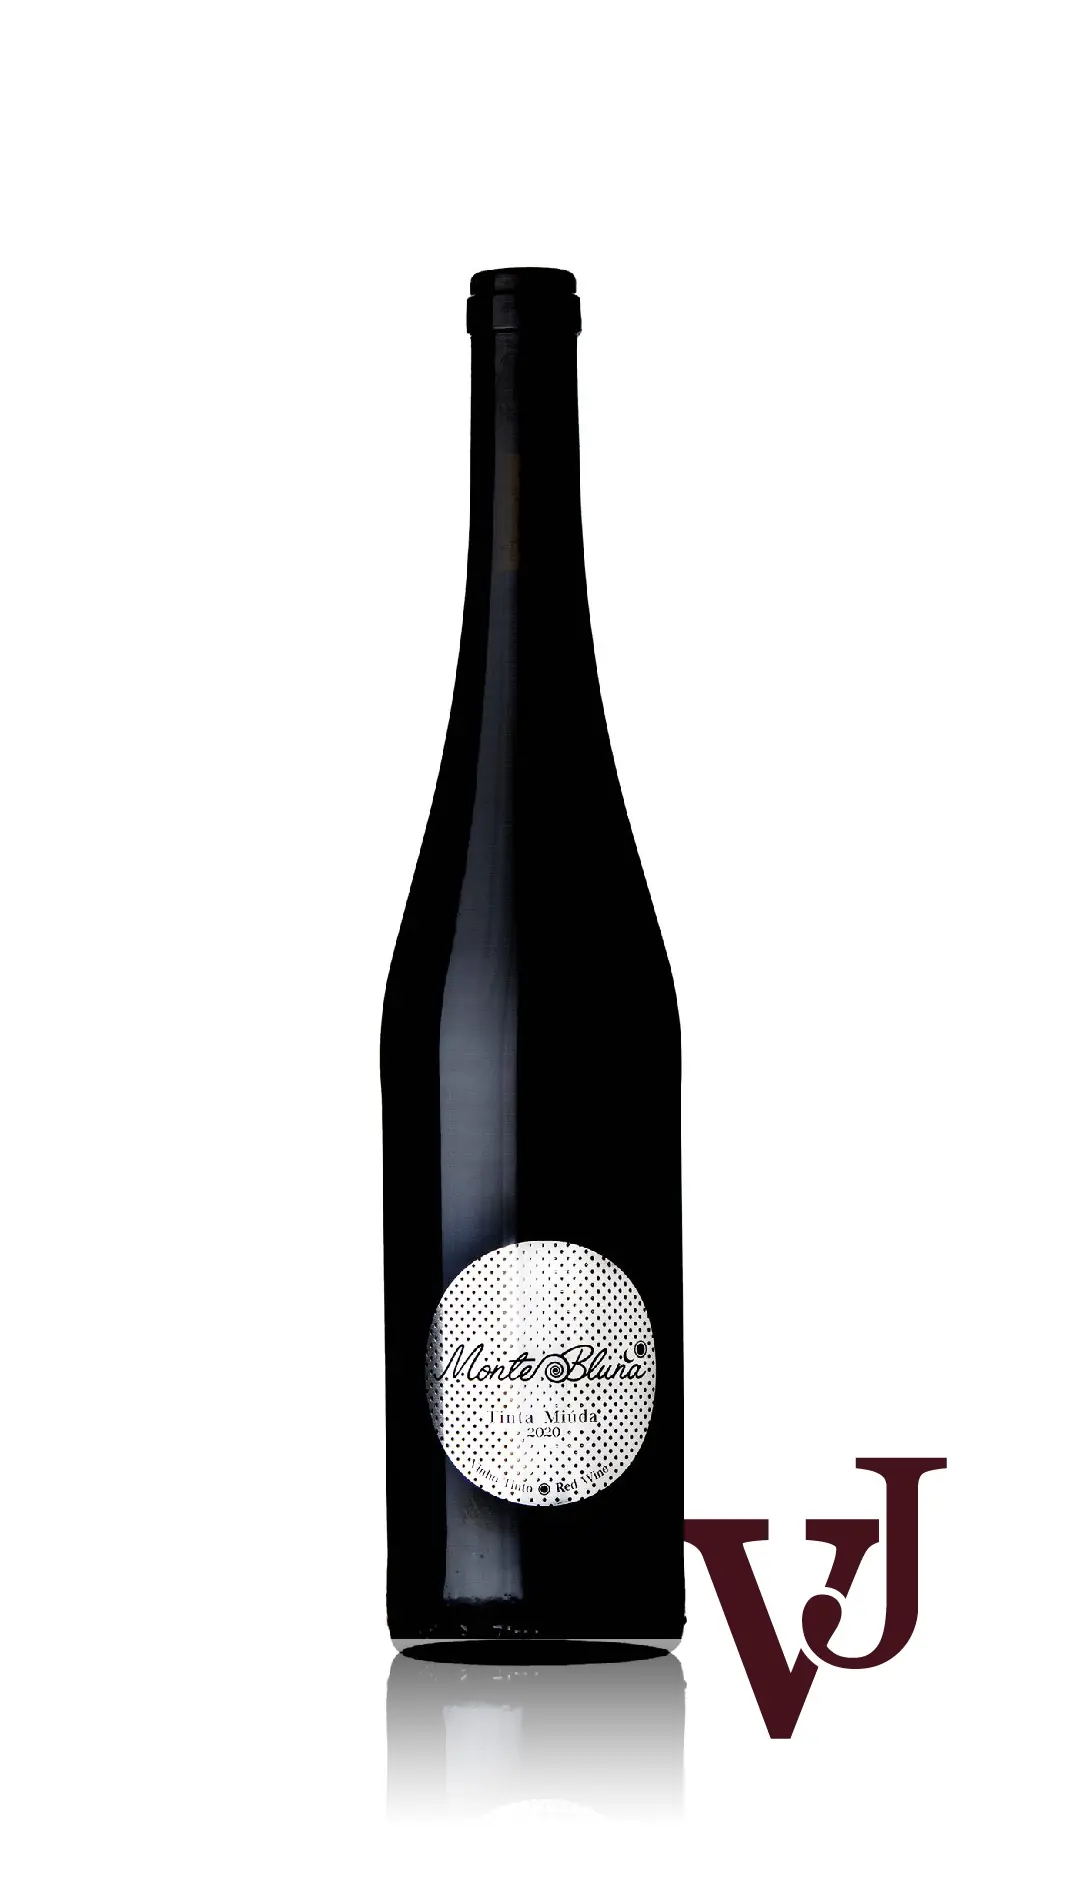 Rött vin - Monte Bluna Tinta Miúda 2020 artikel nummer 9336901 från producenten Monte Bluna Lda från Portugal - Vinjournalen.se